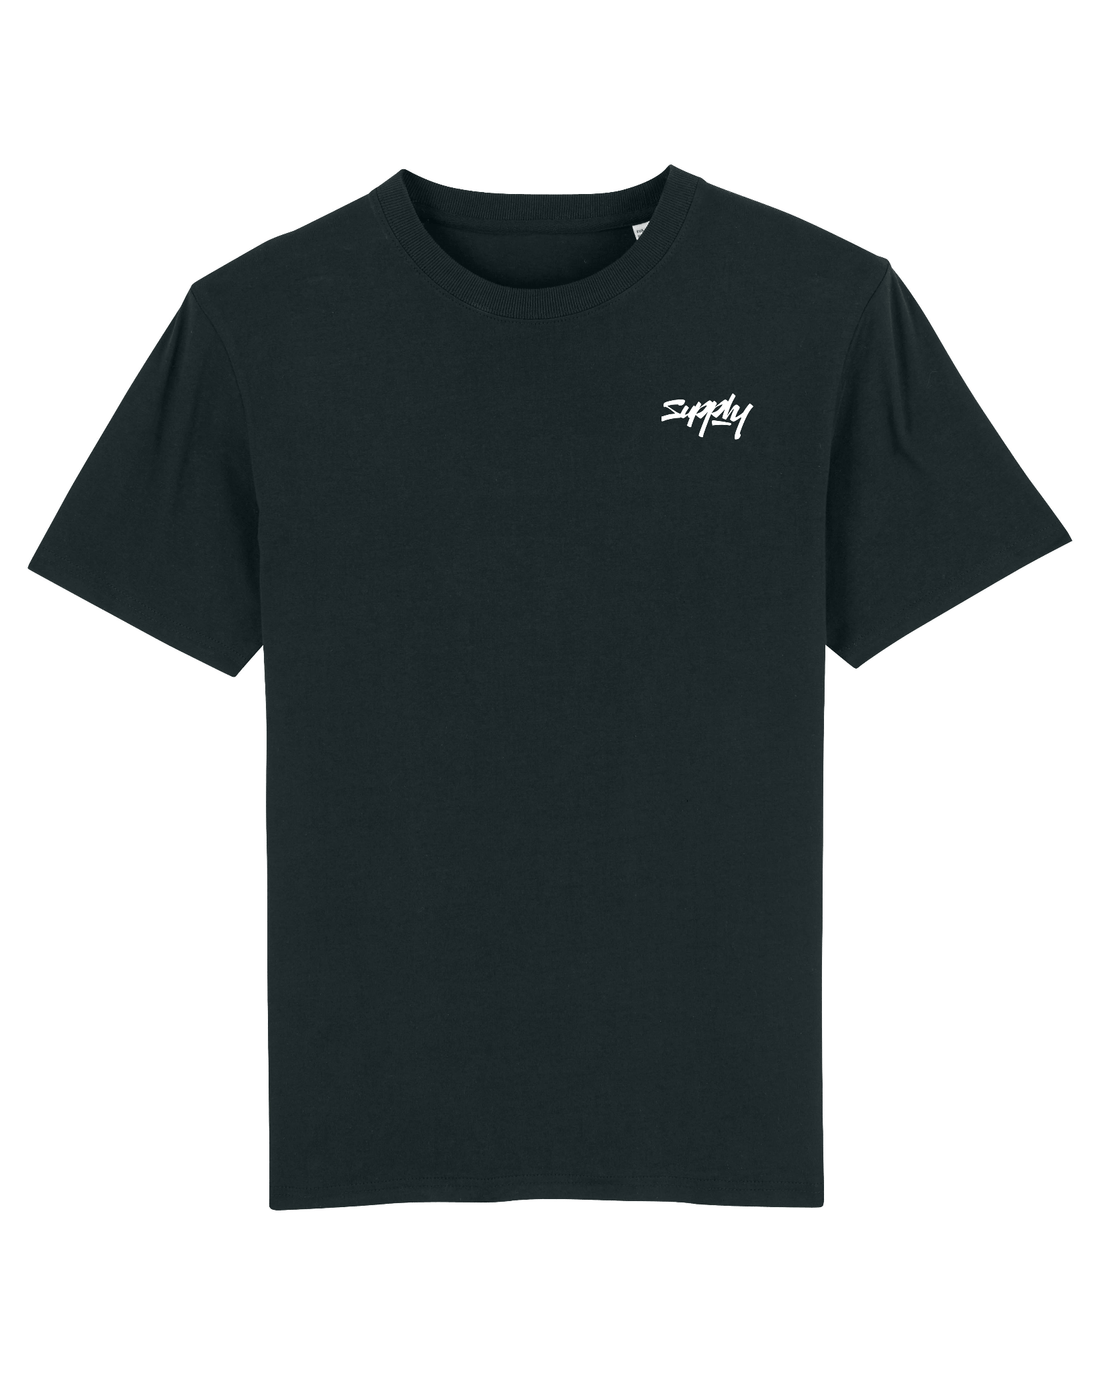 Black Skater T-Shirt, Supply V2 Front Print